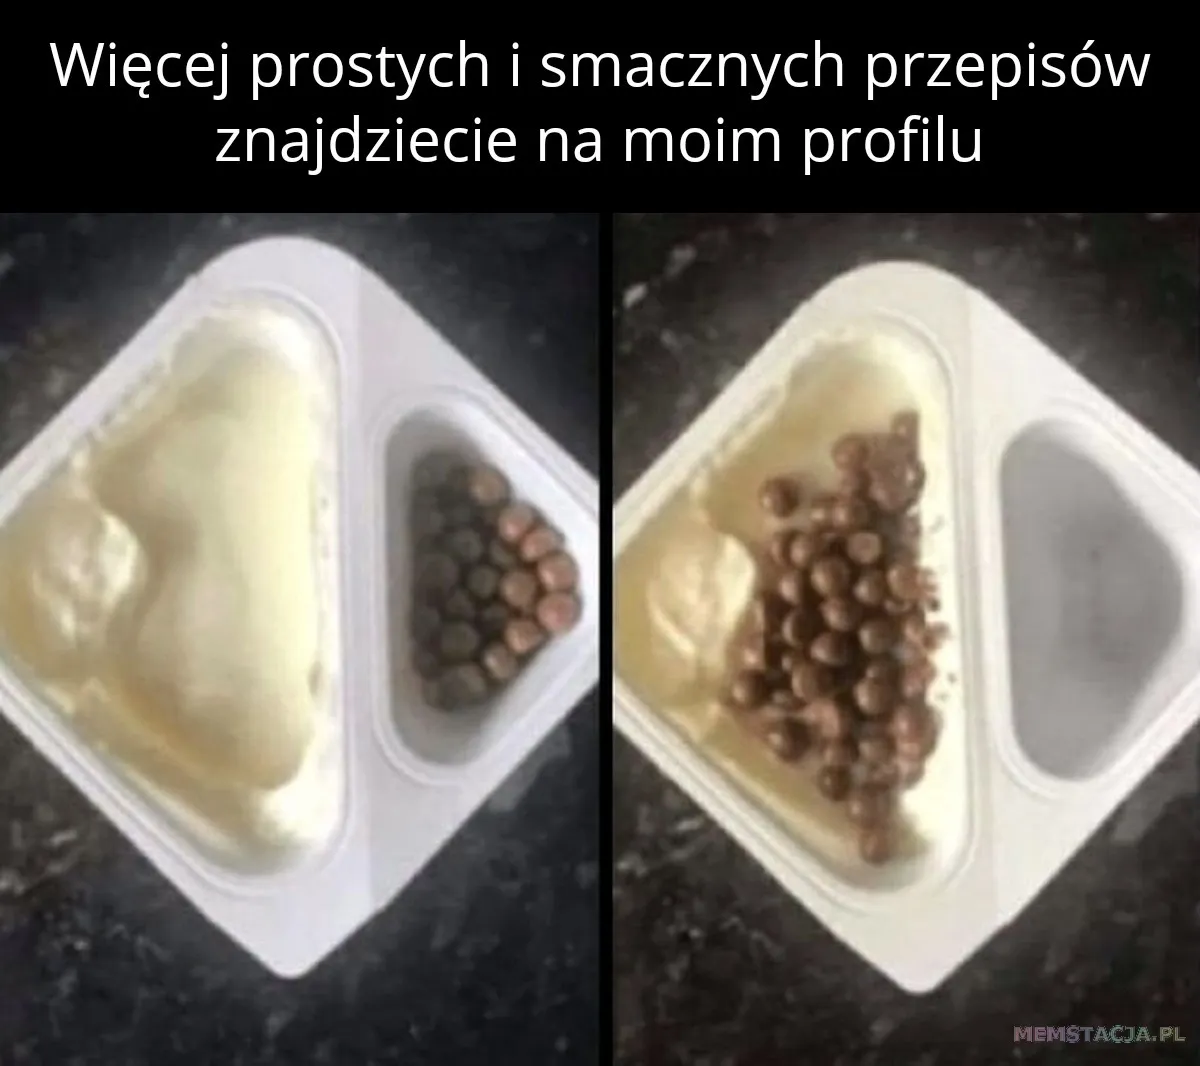 Mem przedstawiający jogurt z dodatkami: 'Więcej prostych i smacznych przepisów znajdziecie na moim profilu'